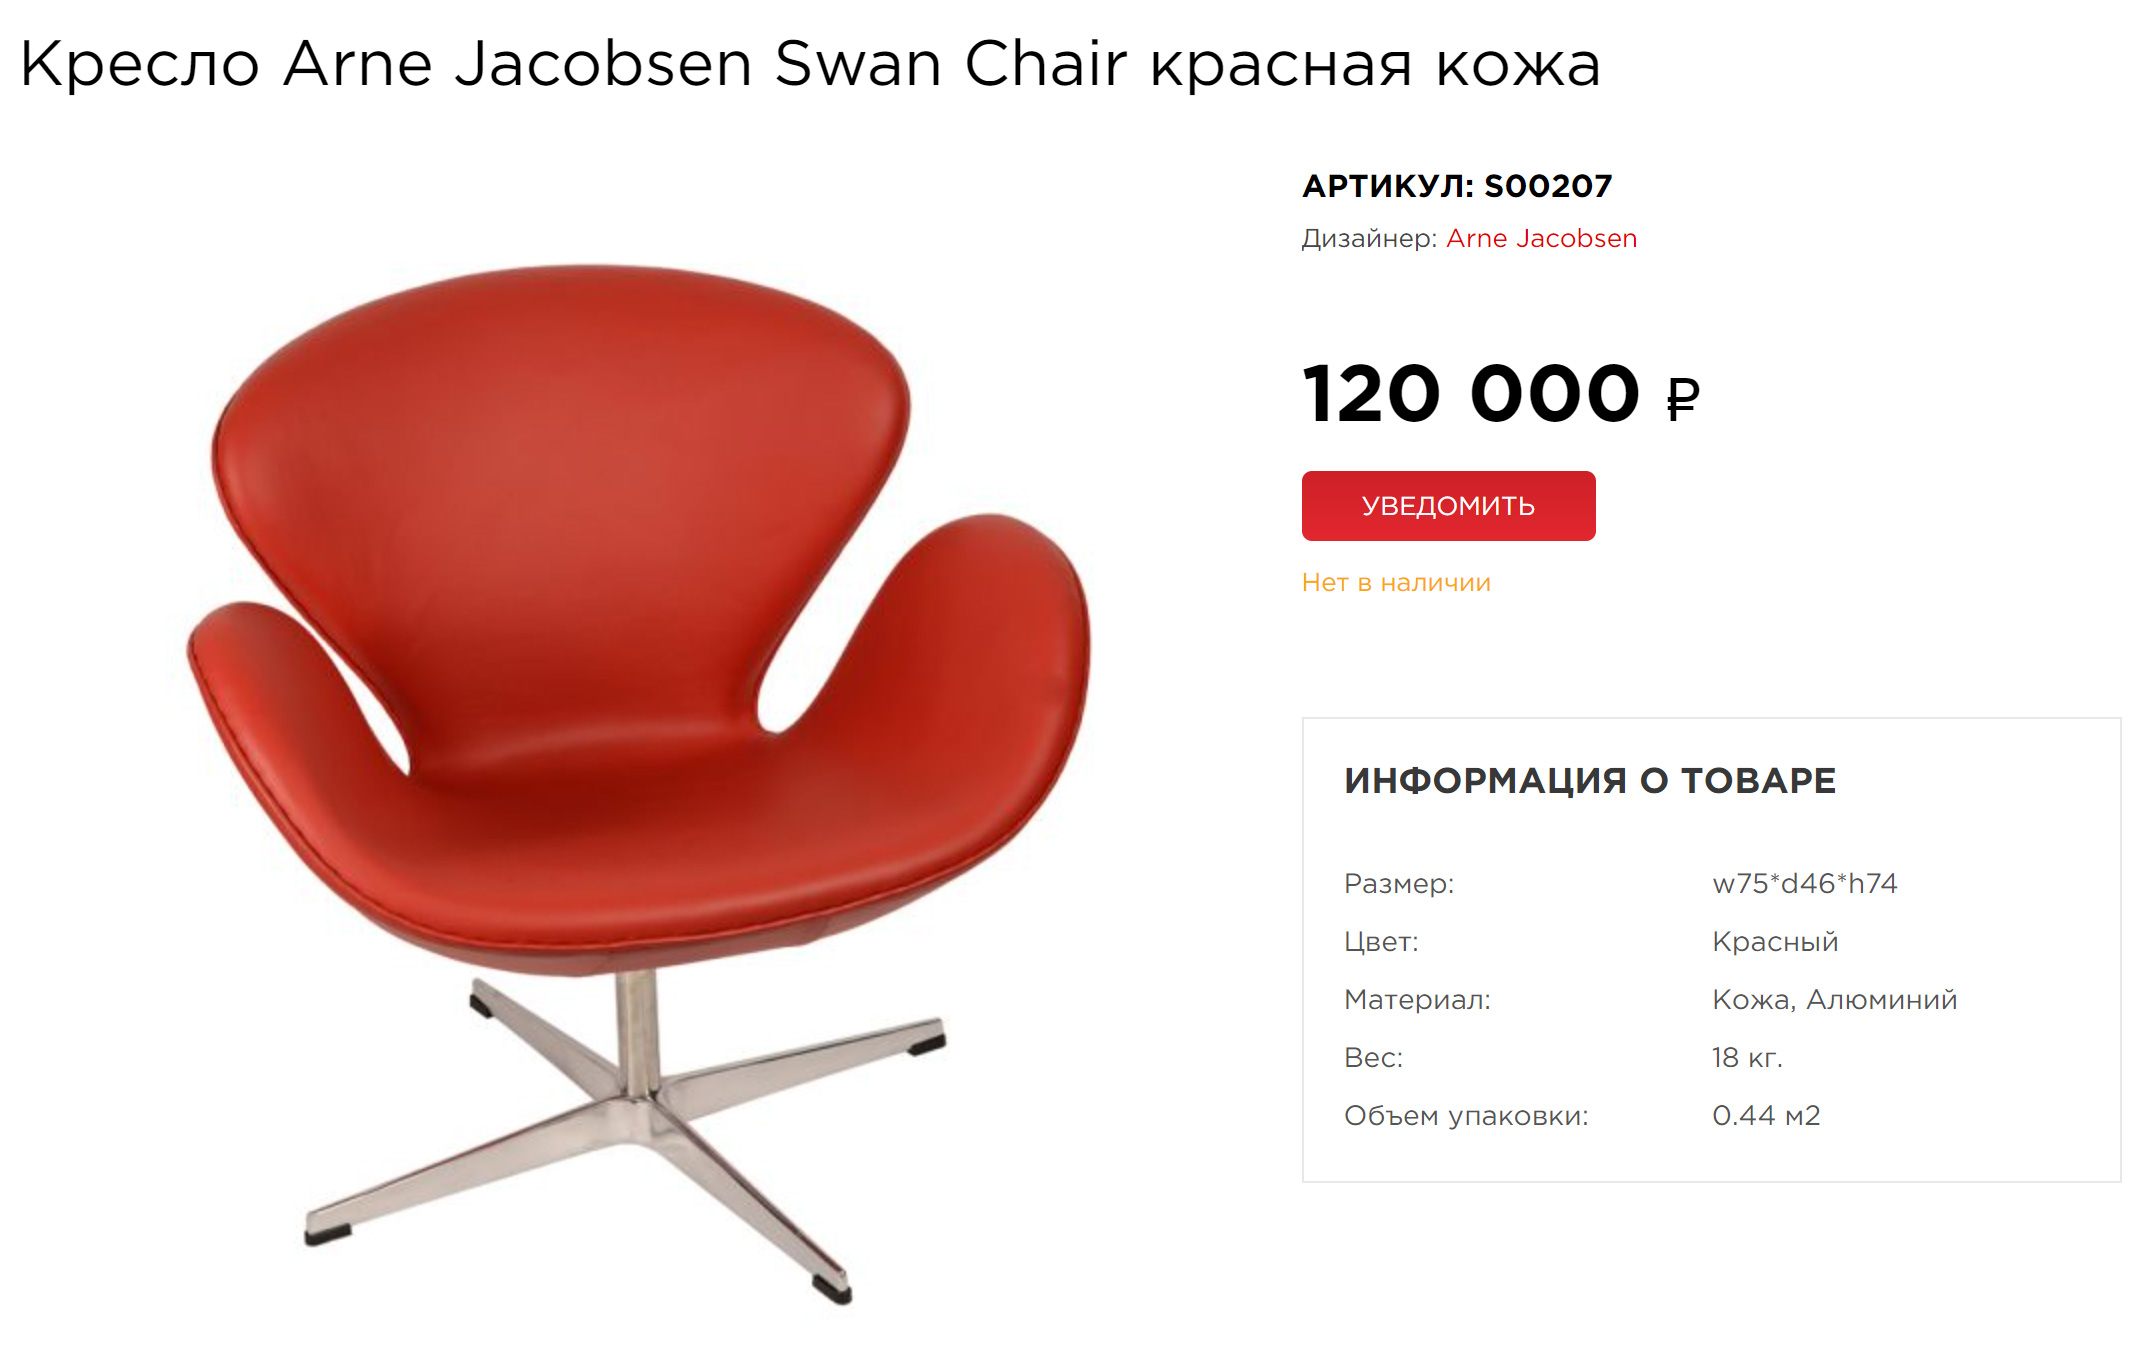 Оригинальное кресло доступно в нескольких цветах и материалах — например, есть кожаная, шерстяная и тканевая обивки. Источник: soho⁠-⁠design.pro